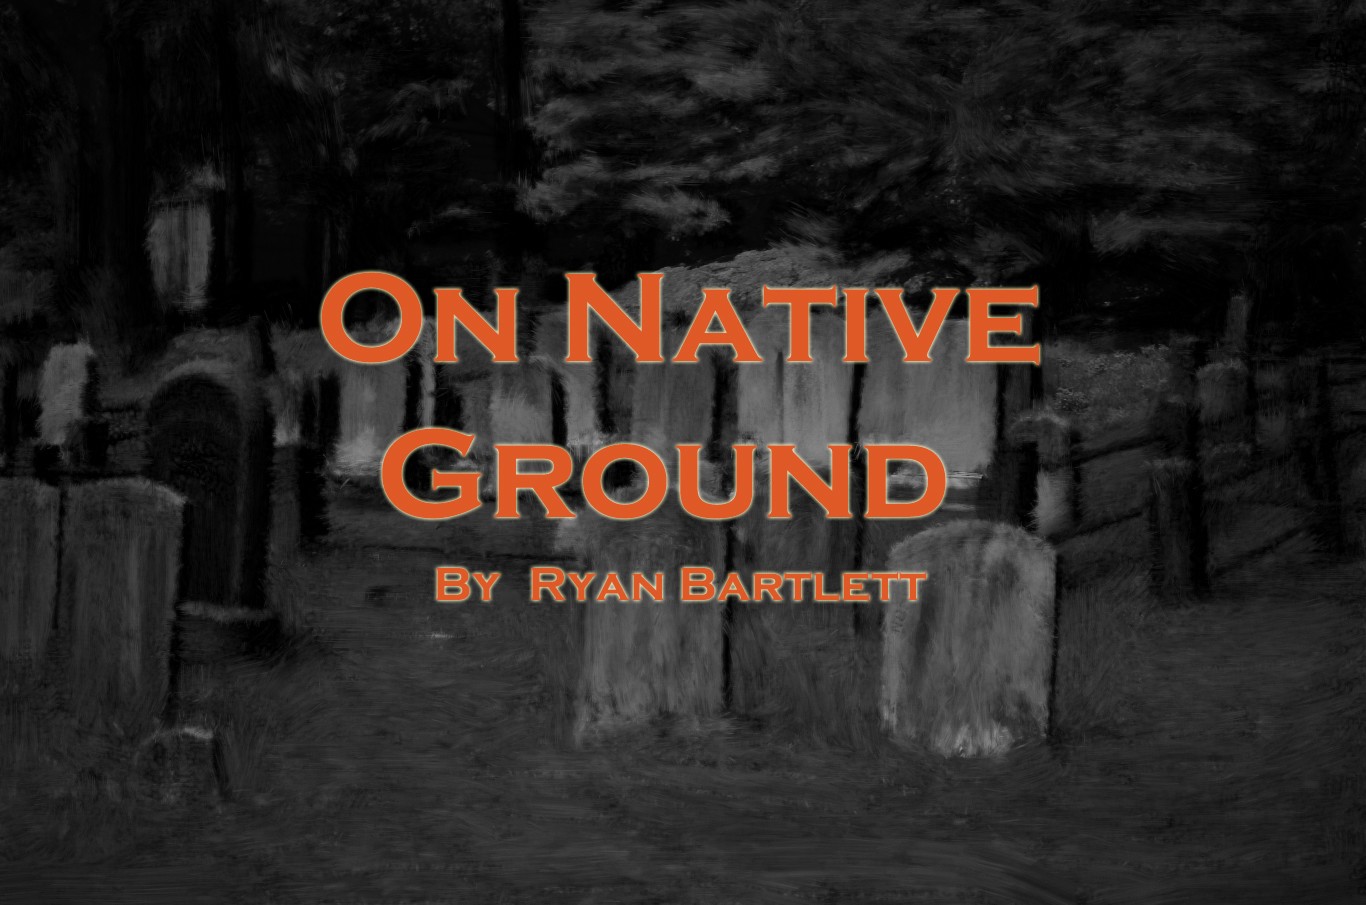 On Native Ground, by Ryan Bartlett